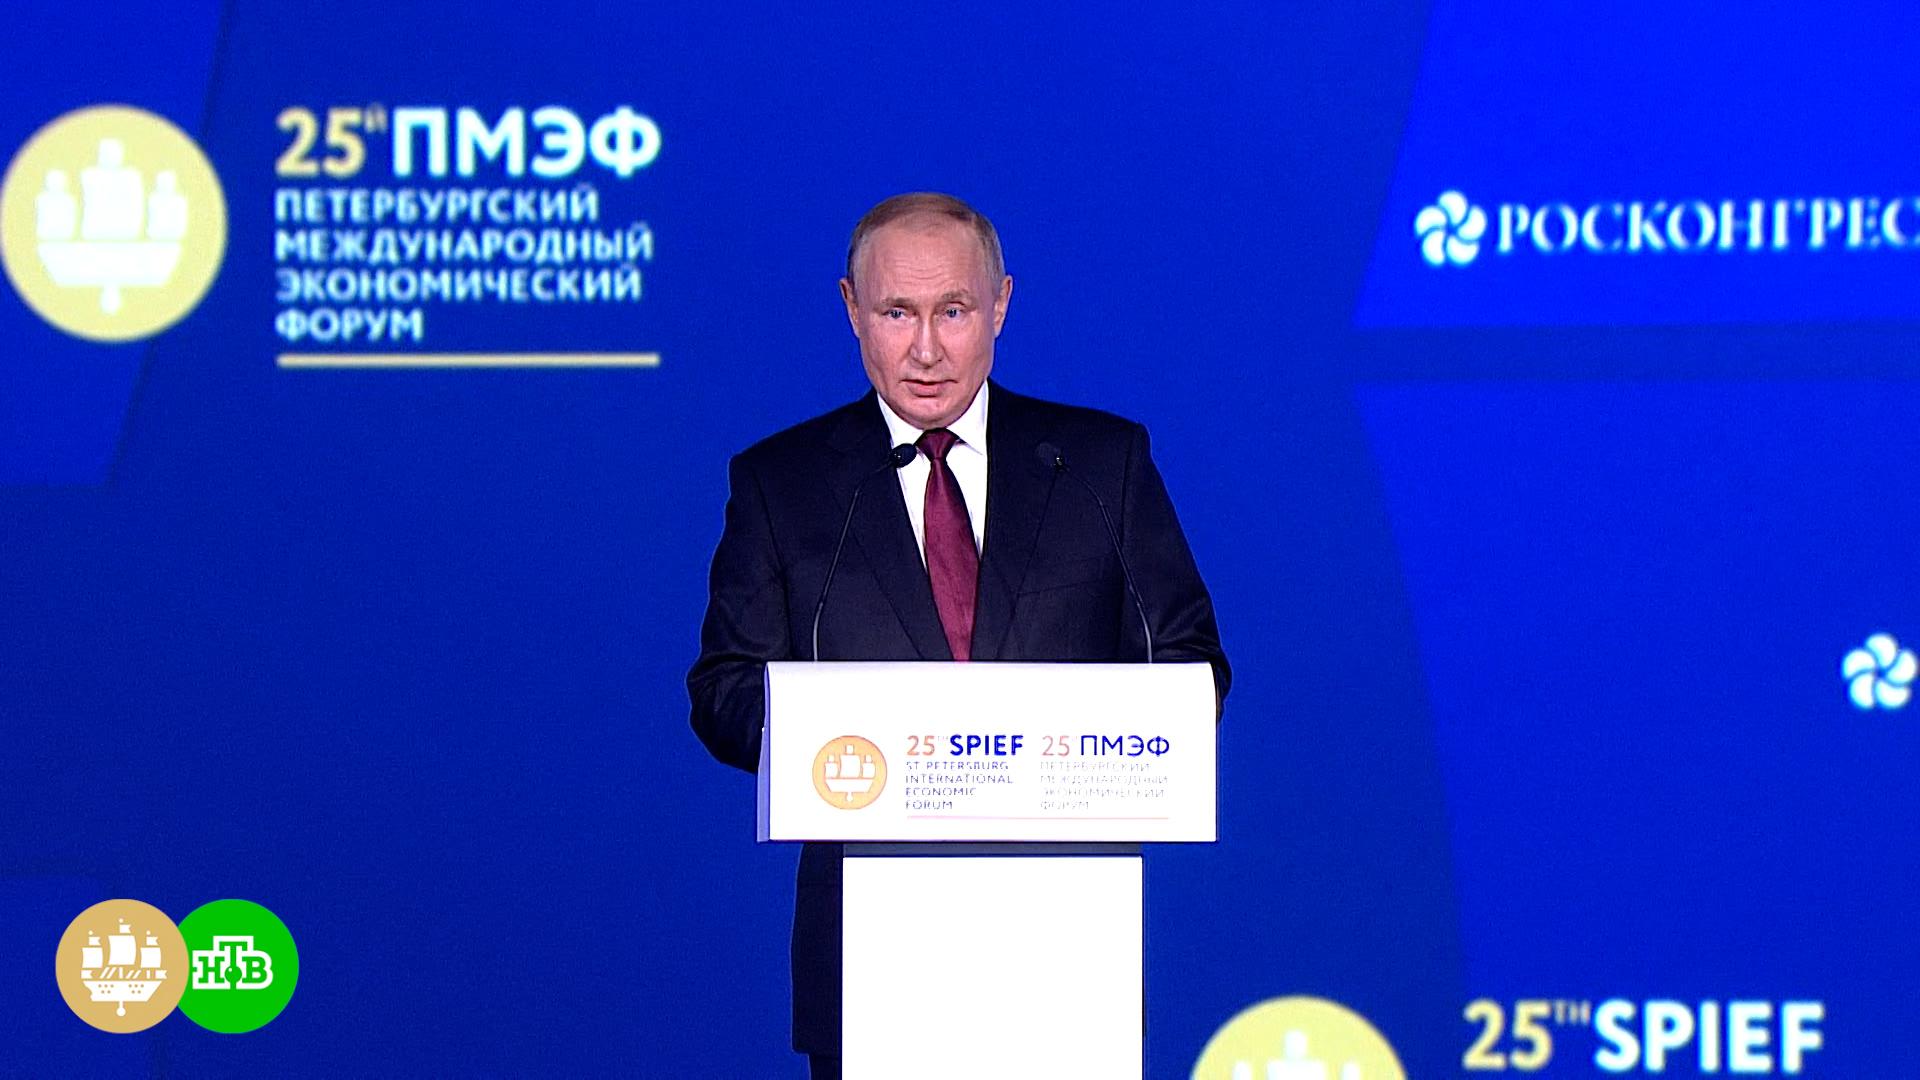 Вступительная речь Владимира Путина на пленарном заседании ПМЭФ-2022. Полная версия